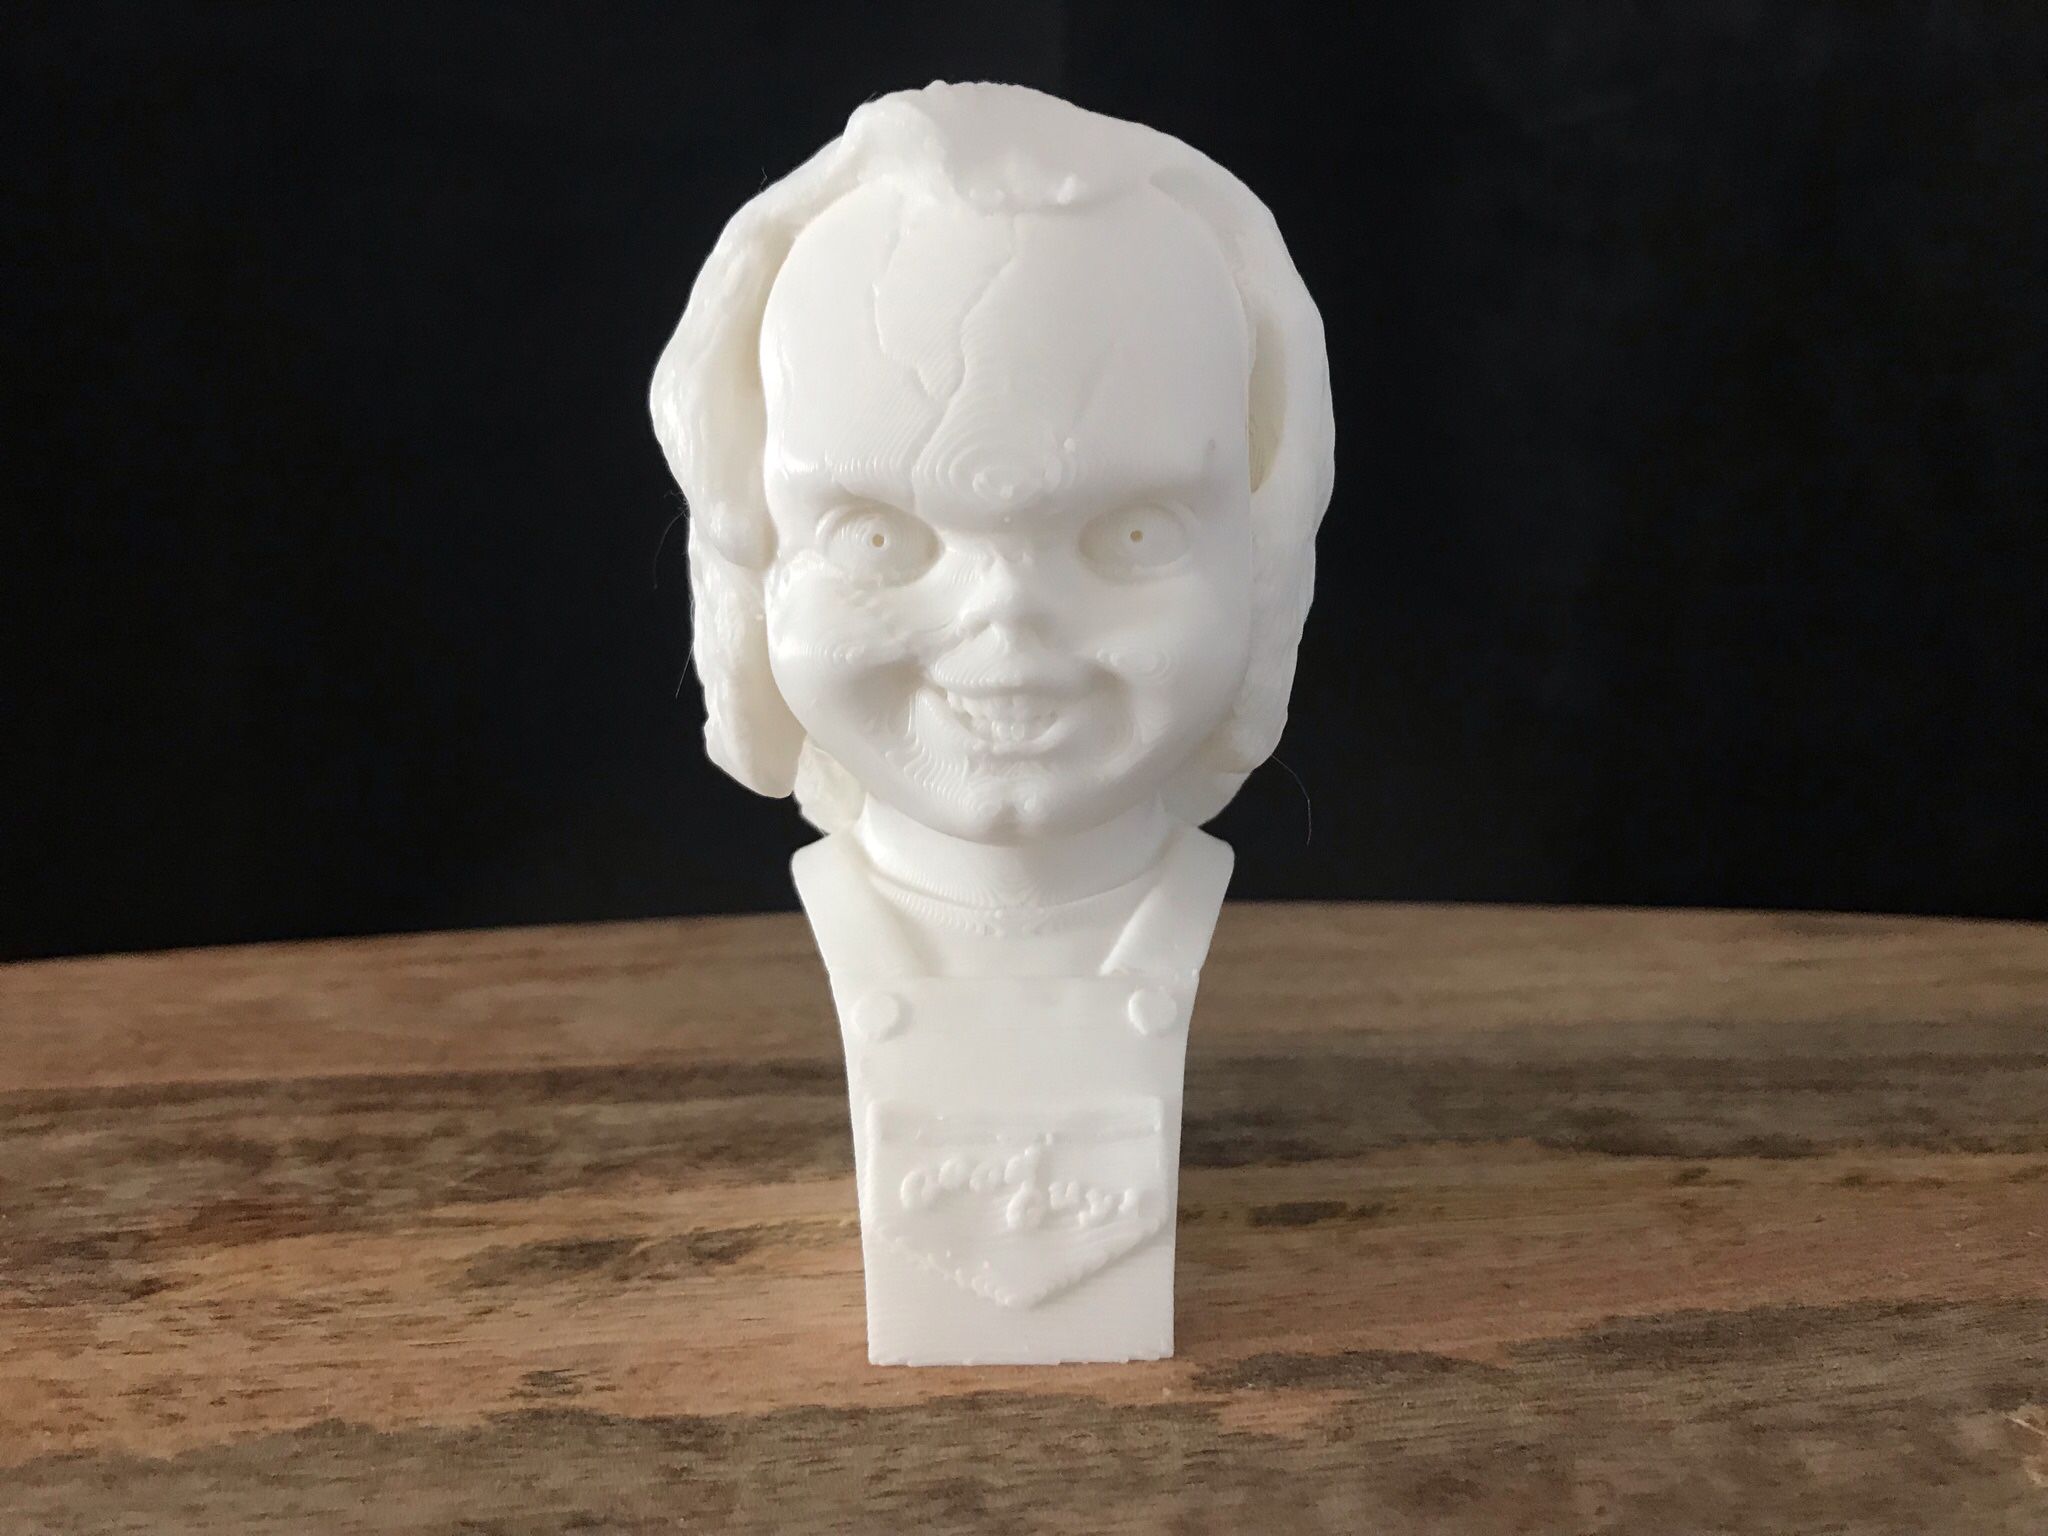 Chucky Bust | Chucky Collectibles | Chucky toy | Chucky Figurine | Chucky statue | Bride of Chucky | Chucky Collectibles | Chucky Knick Knacks